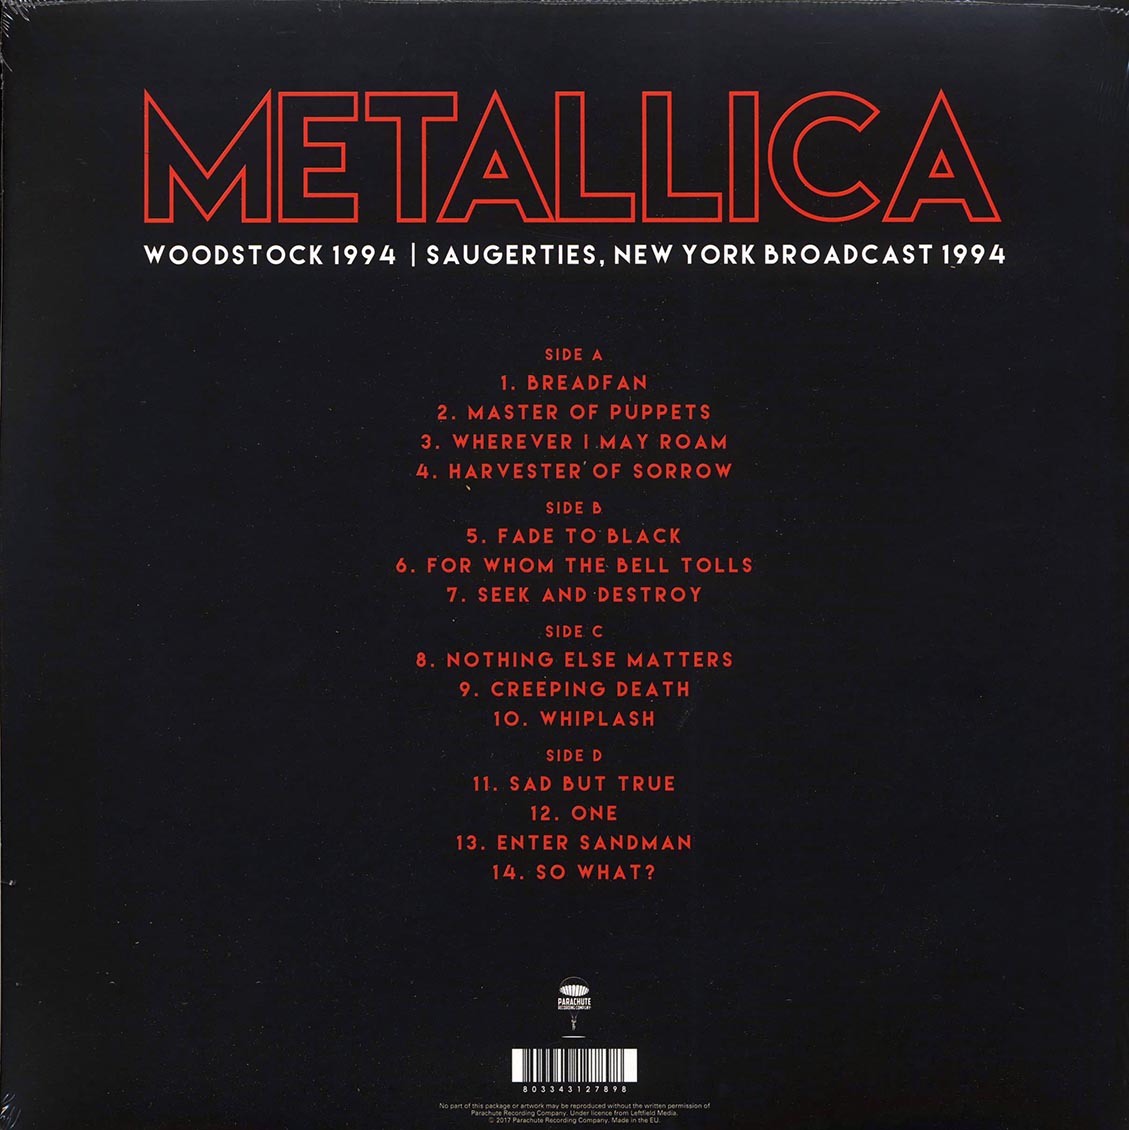 Metallica - Woodstock 1994: Saugerties, New York Broadcast (2xLP) - Vinyl LP, LP